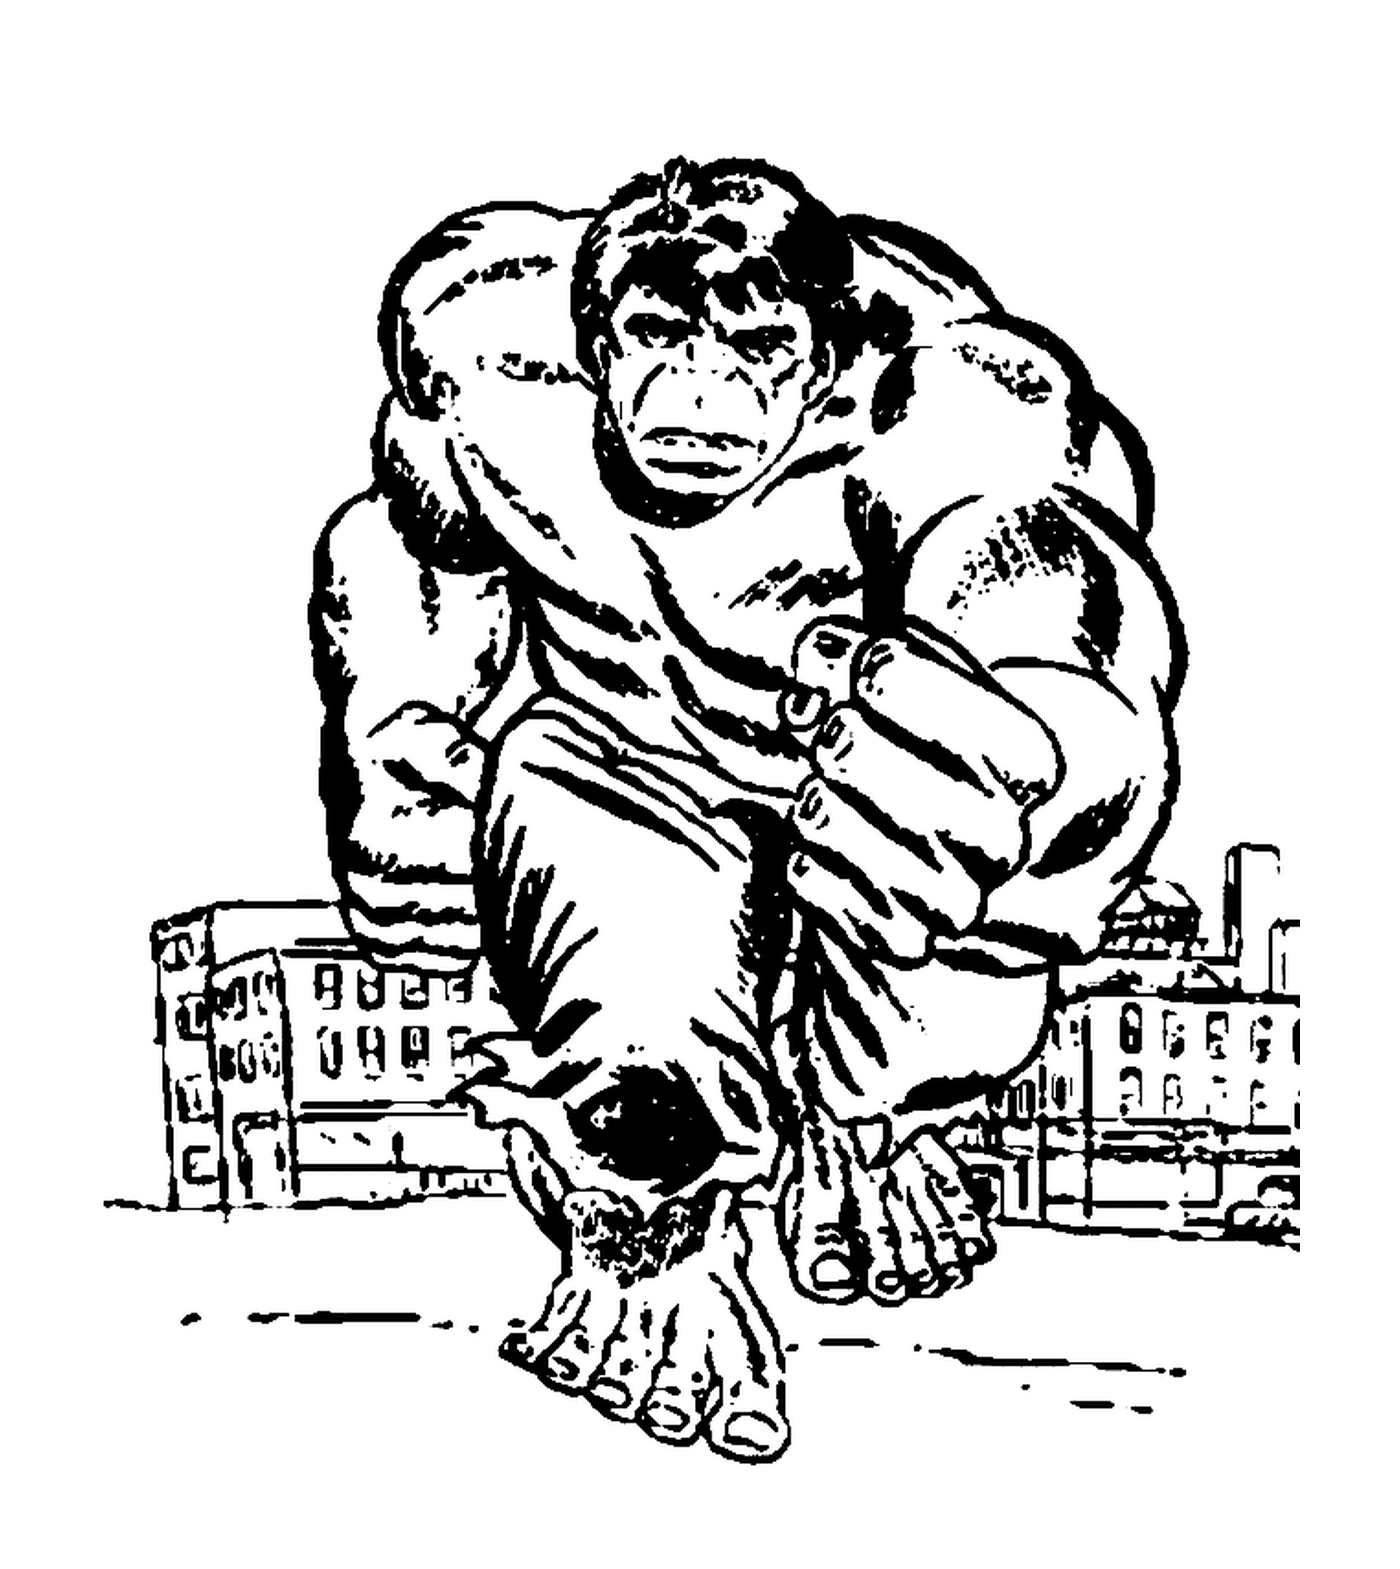  Hulk leaving town 